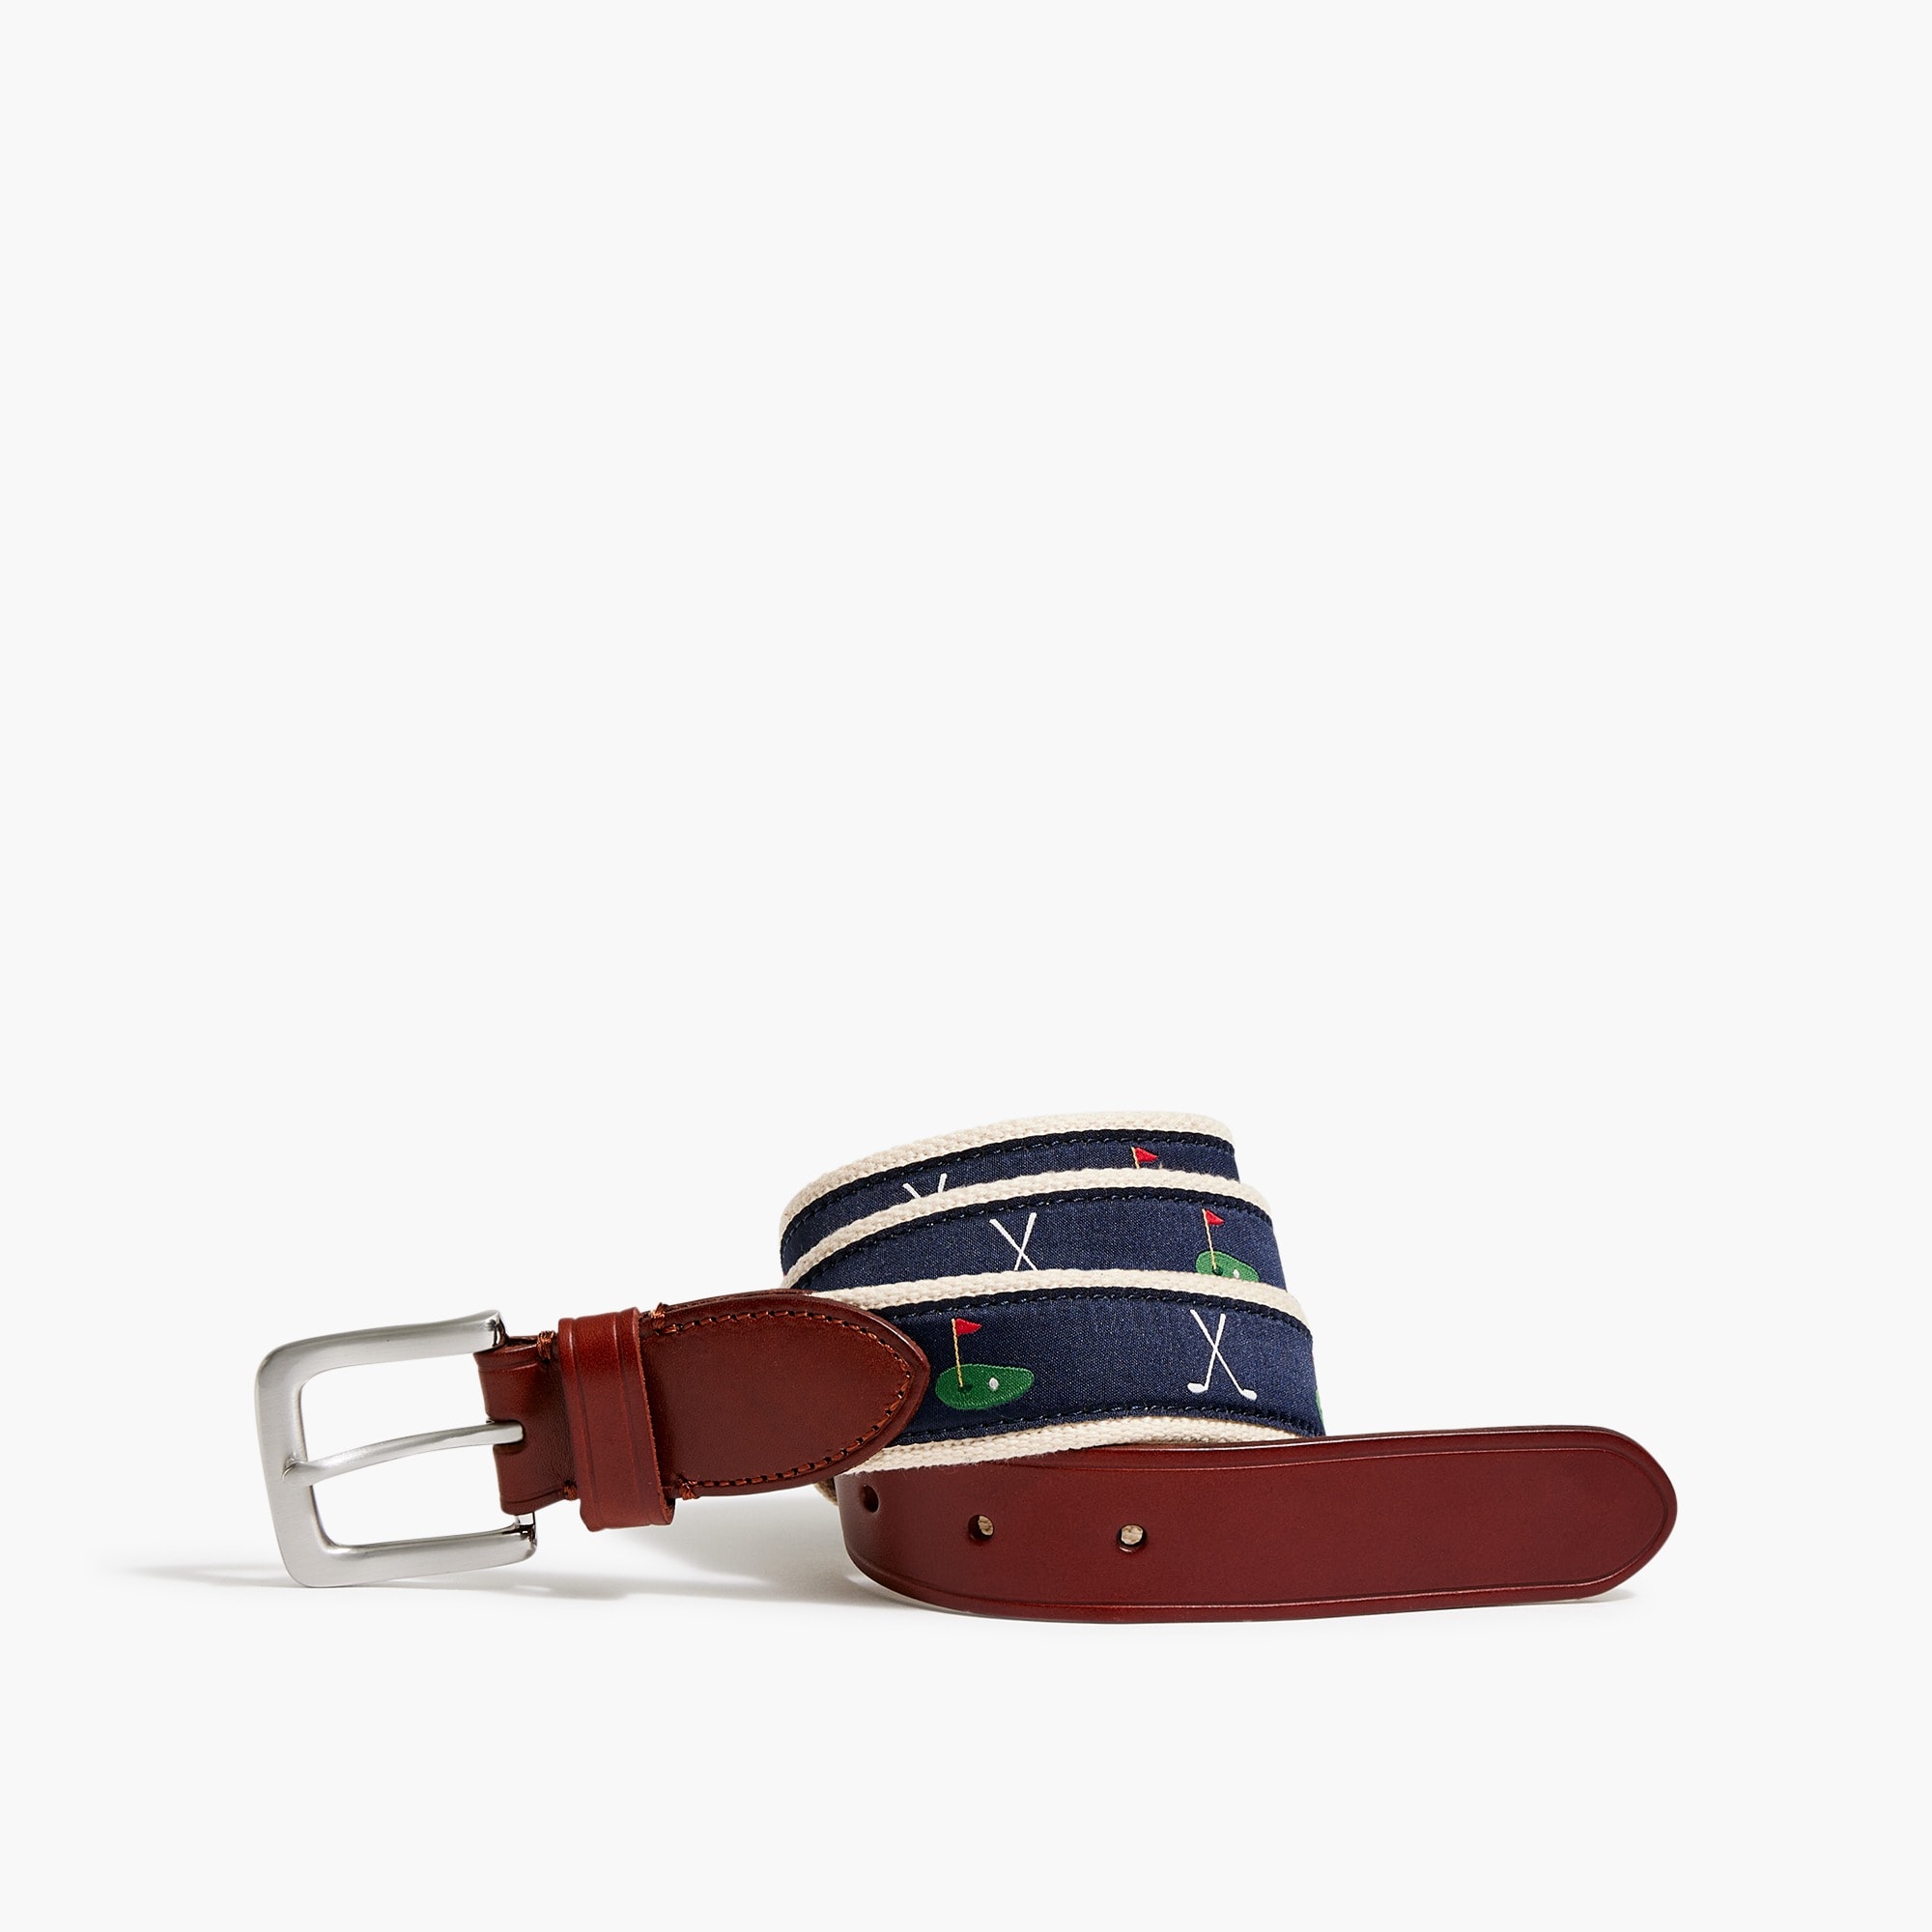 Jcrew Embroidered patterned belt